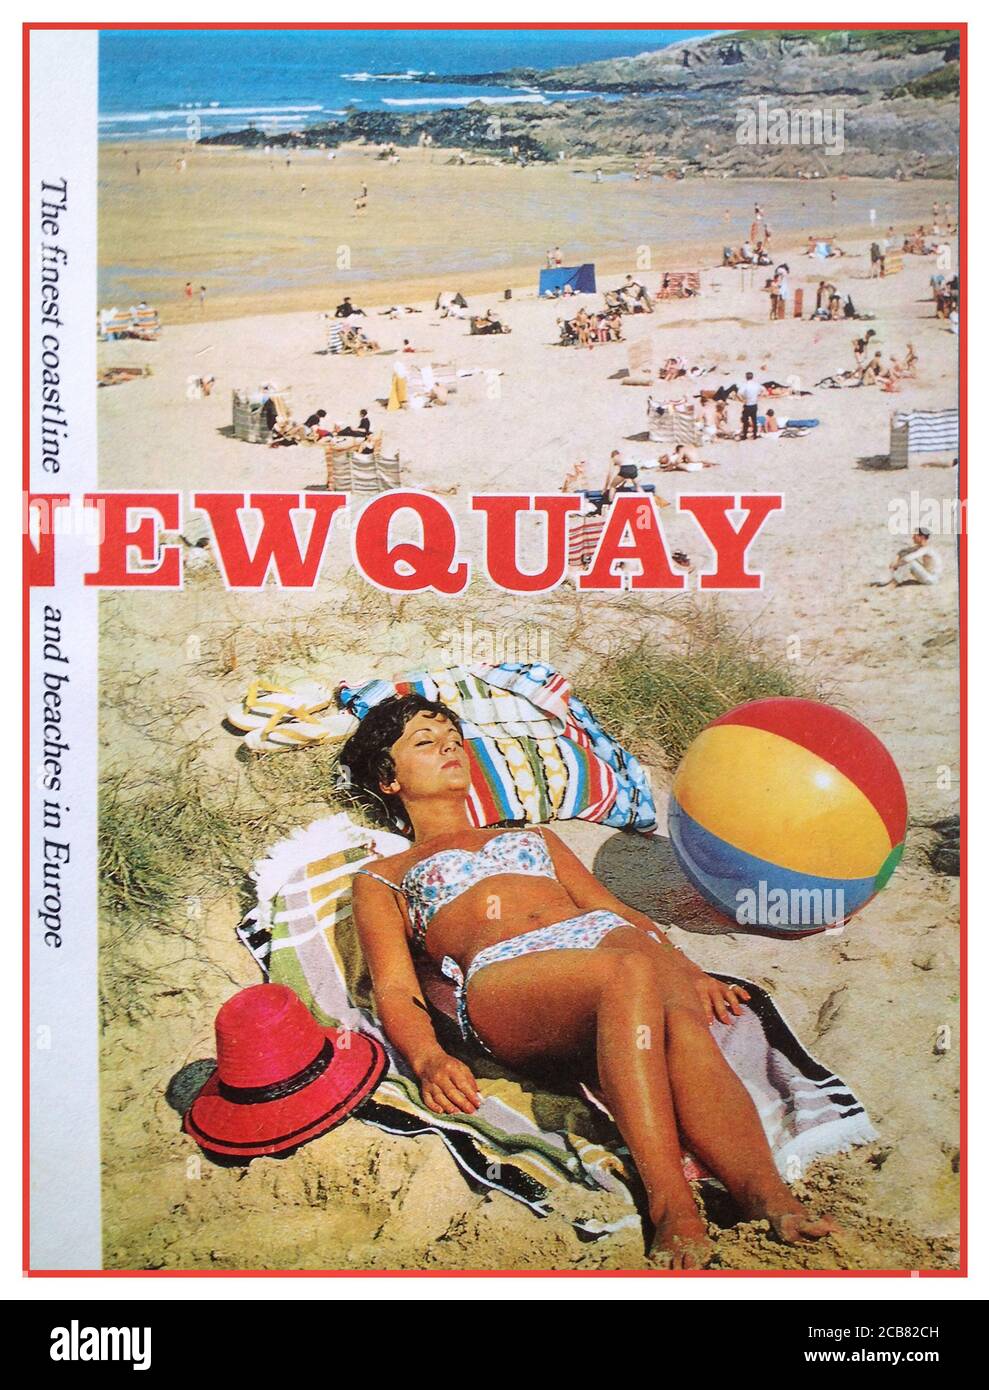 Touristische Broschürenhülle aus den 1960er Jahren für Newquay Cornwall UK Ein weiblicher Sonnenhut im zweiteiligen Badekostüm Sonnenhut Und Beach Ball typischen 1960s Mode und Stil der Era Sandstrand und Küste dahinter Stockfoto